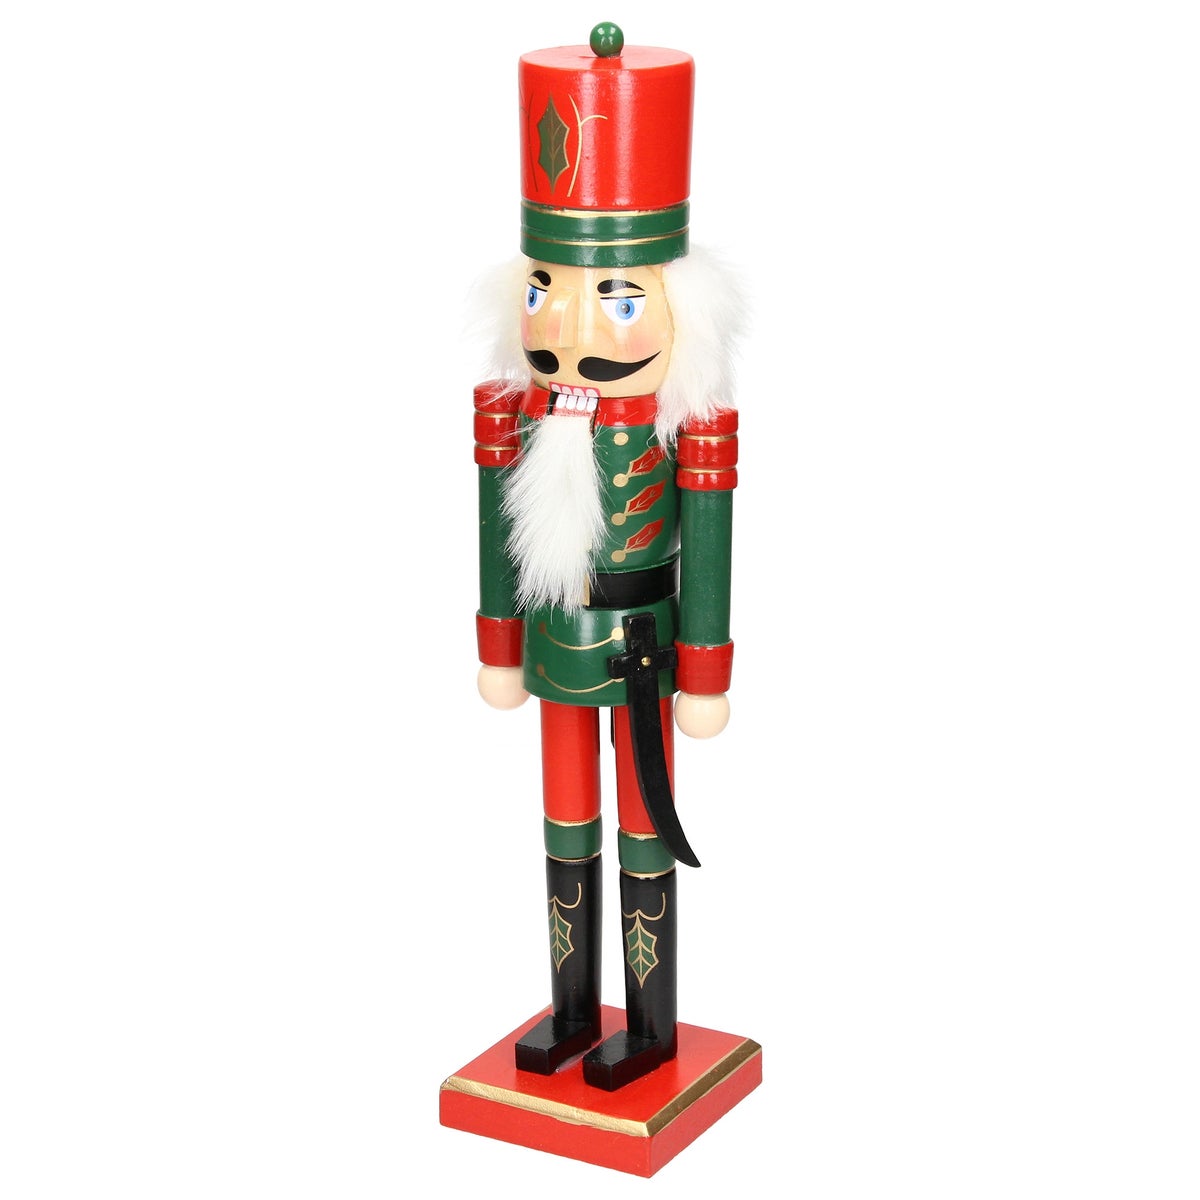 ECD Germany Nussknacker Figur Soldat 25 cm mit roter Hut und Säbel, aus Holz, handbemalt, Unikat, Weihnachten Holzfigur Puppet Marionette Ornament Traditioneller Nussbrecher Weihnachtsdeko Deko Statue